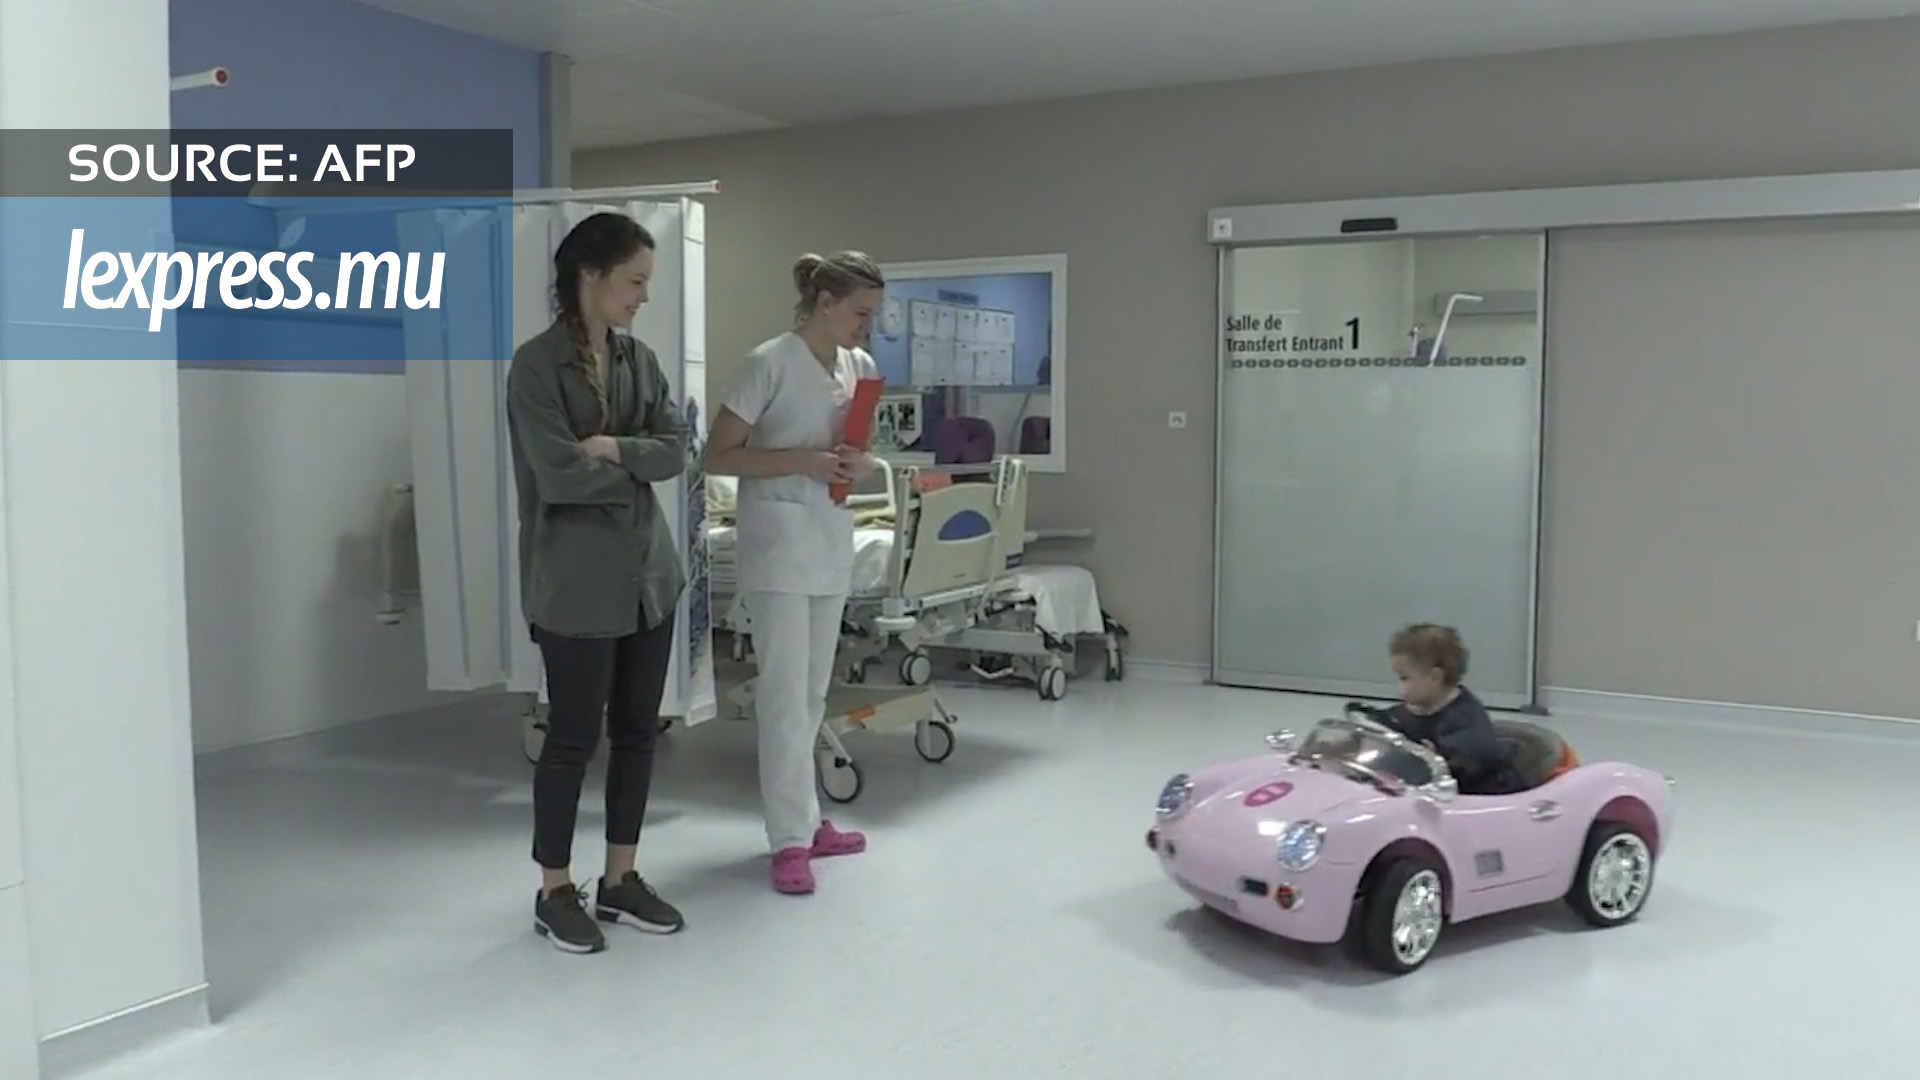 Des petites voitures anti-stress pour les enfants à l'hôpital